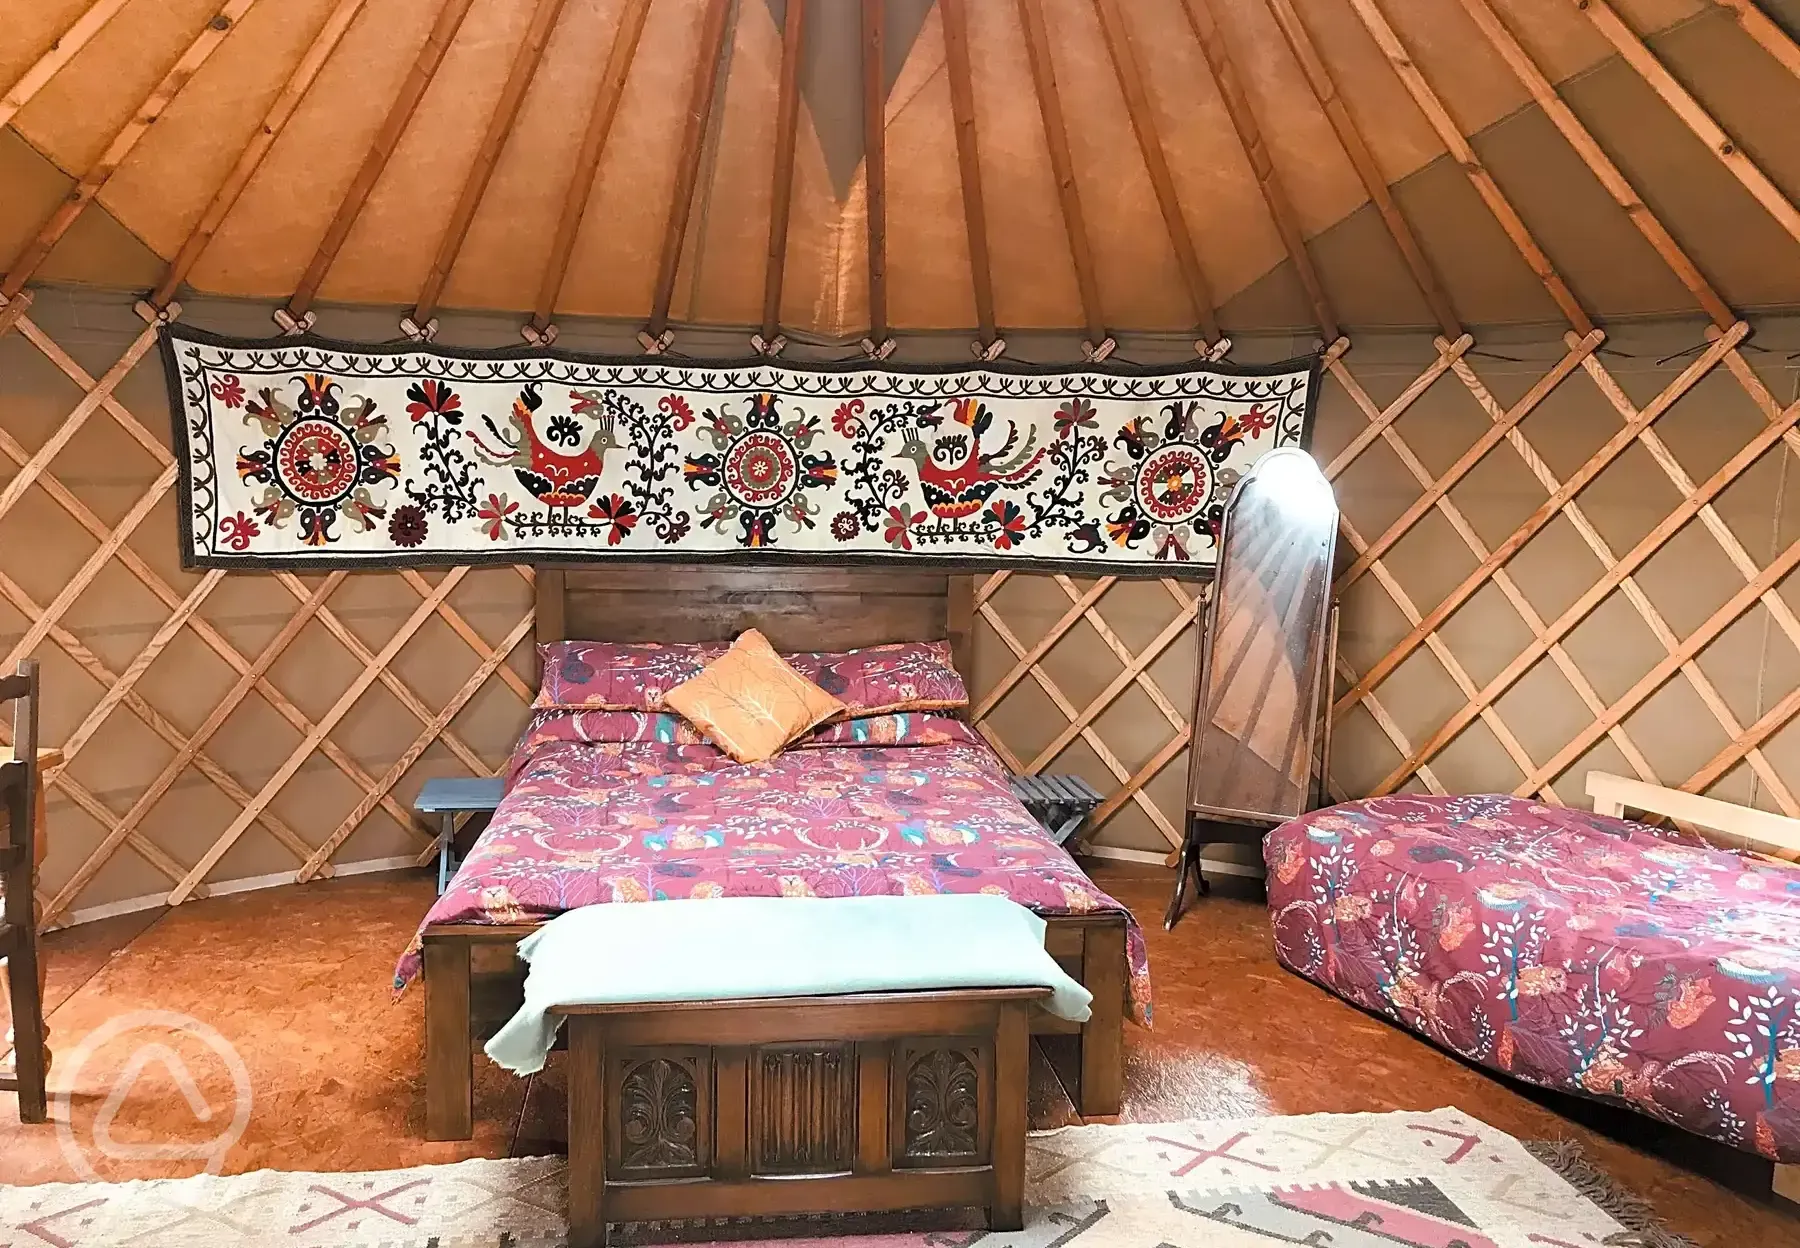 Bramble Yurt interior